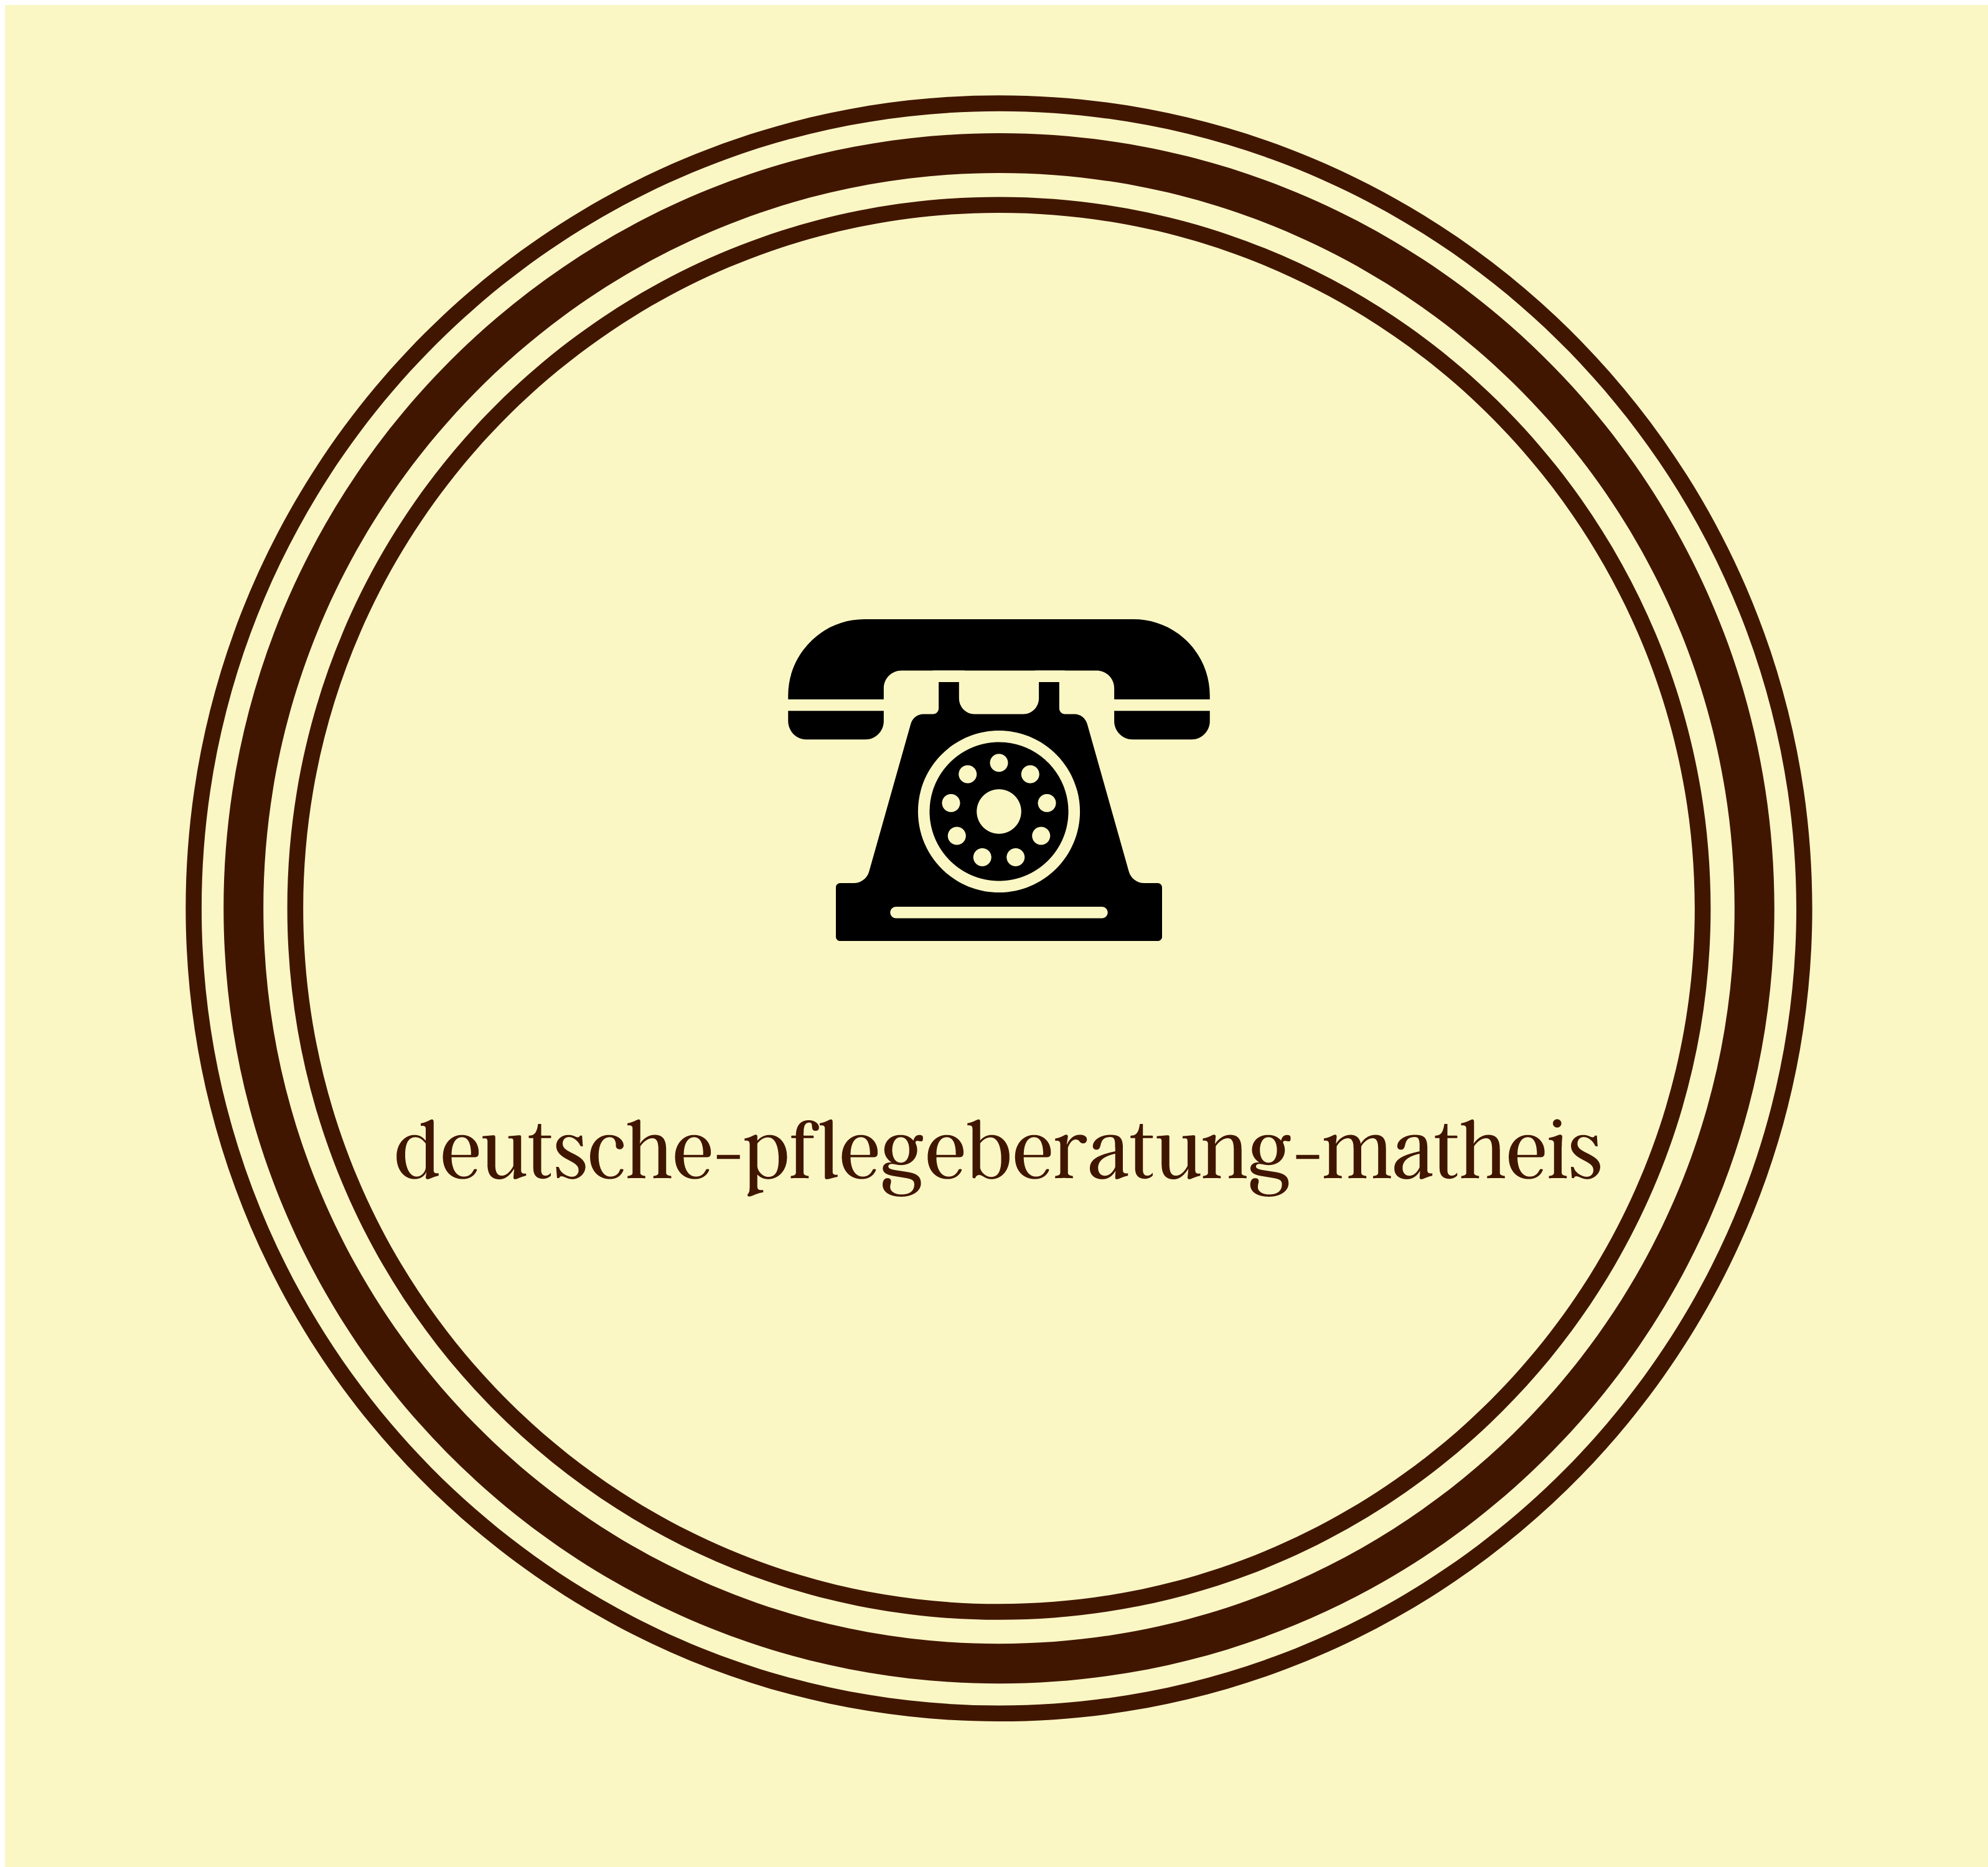 DeutschePflegeberatungMatheis